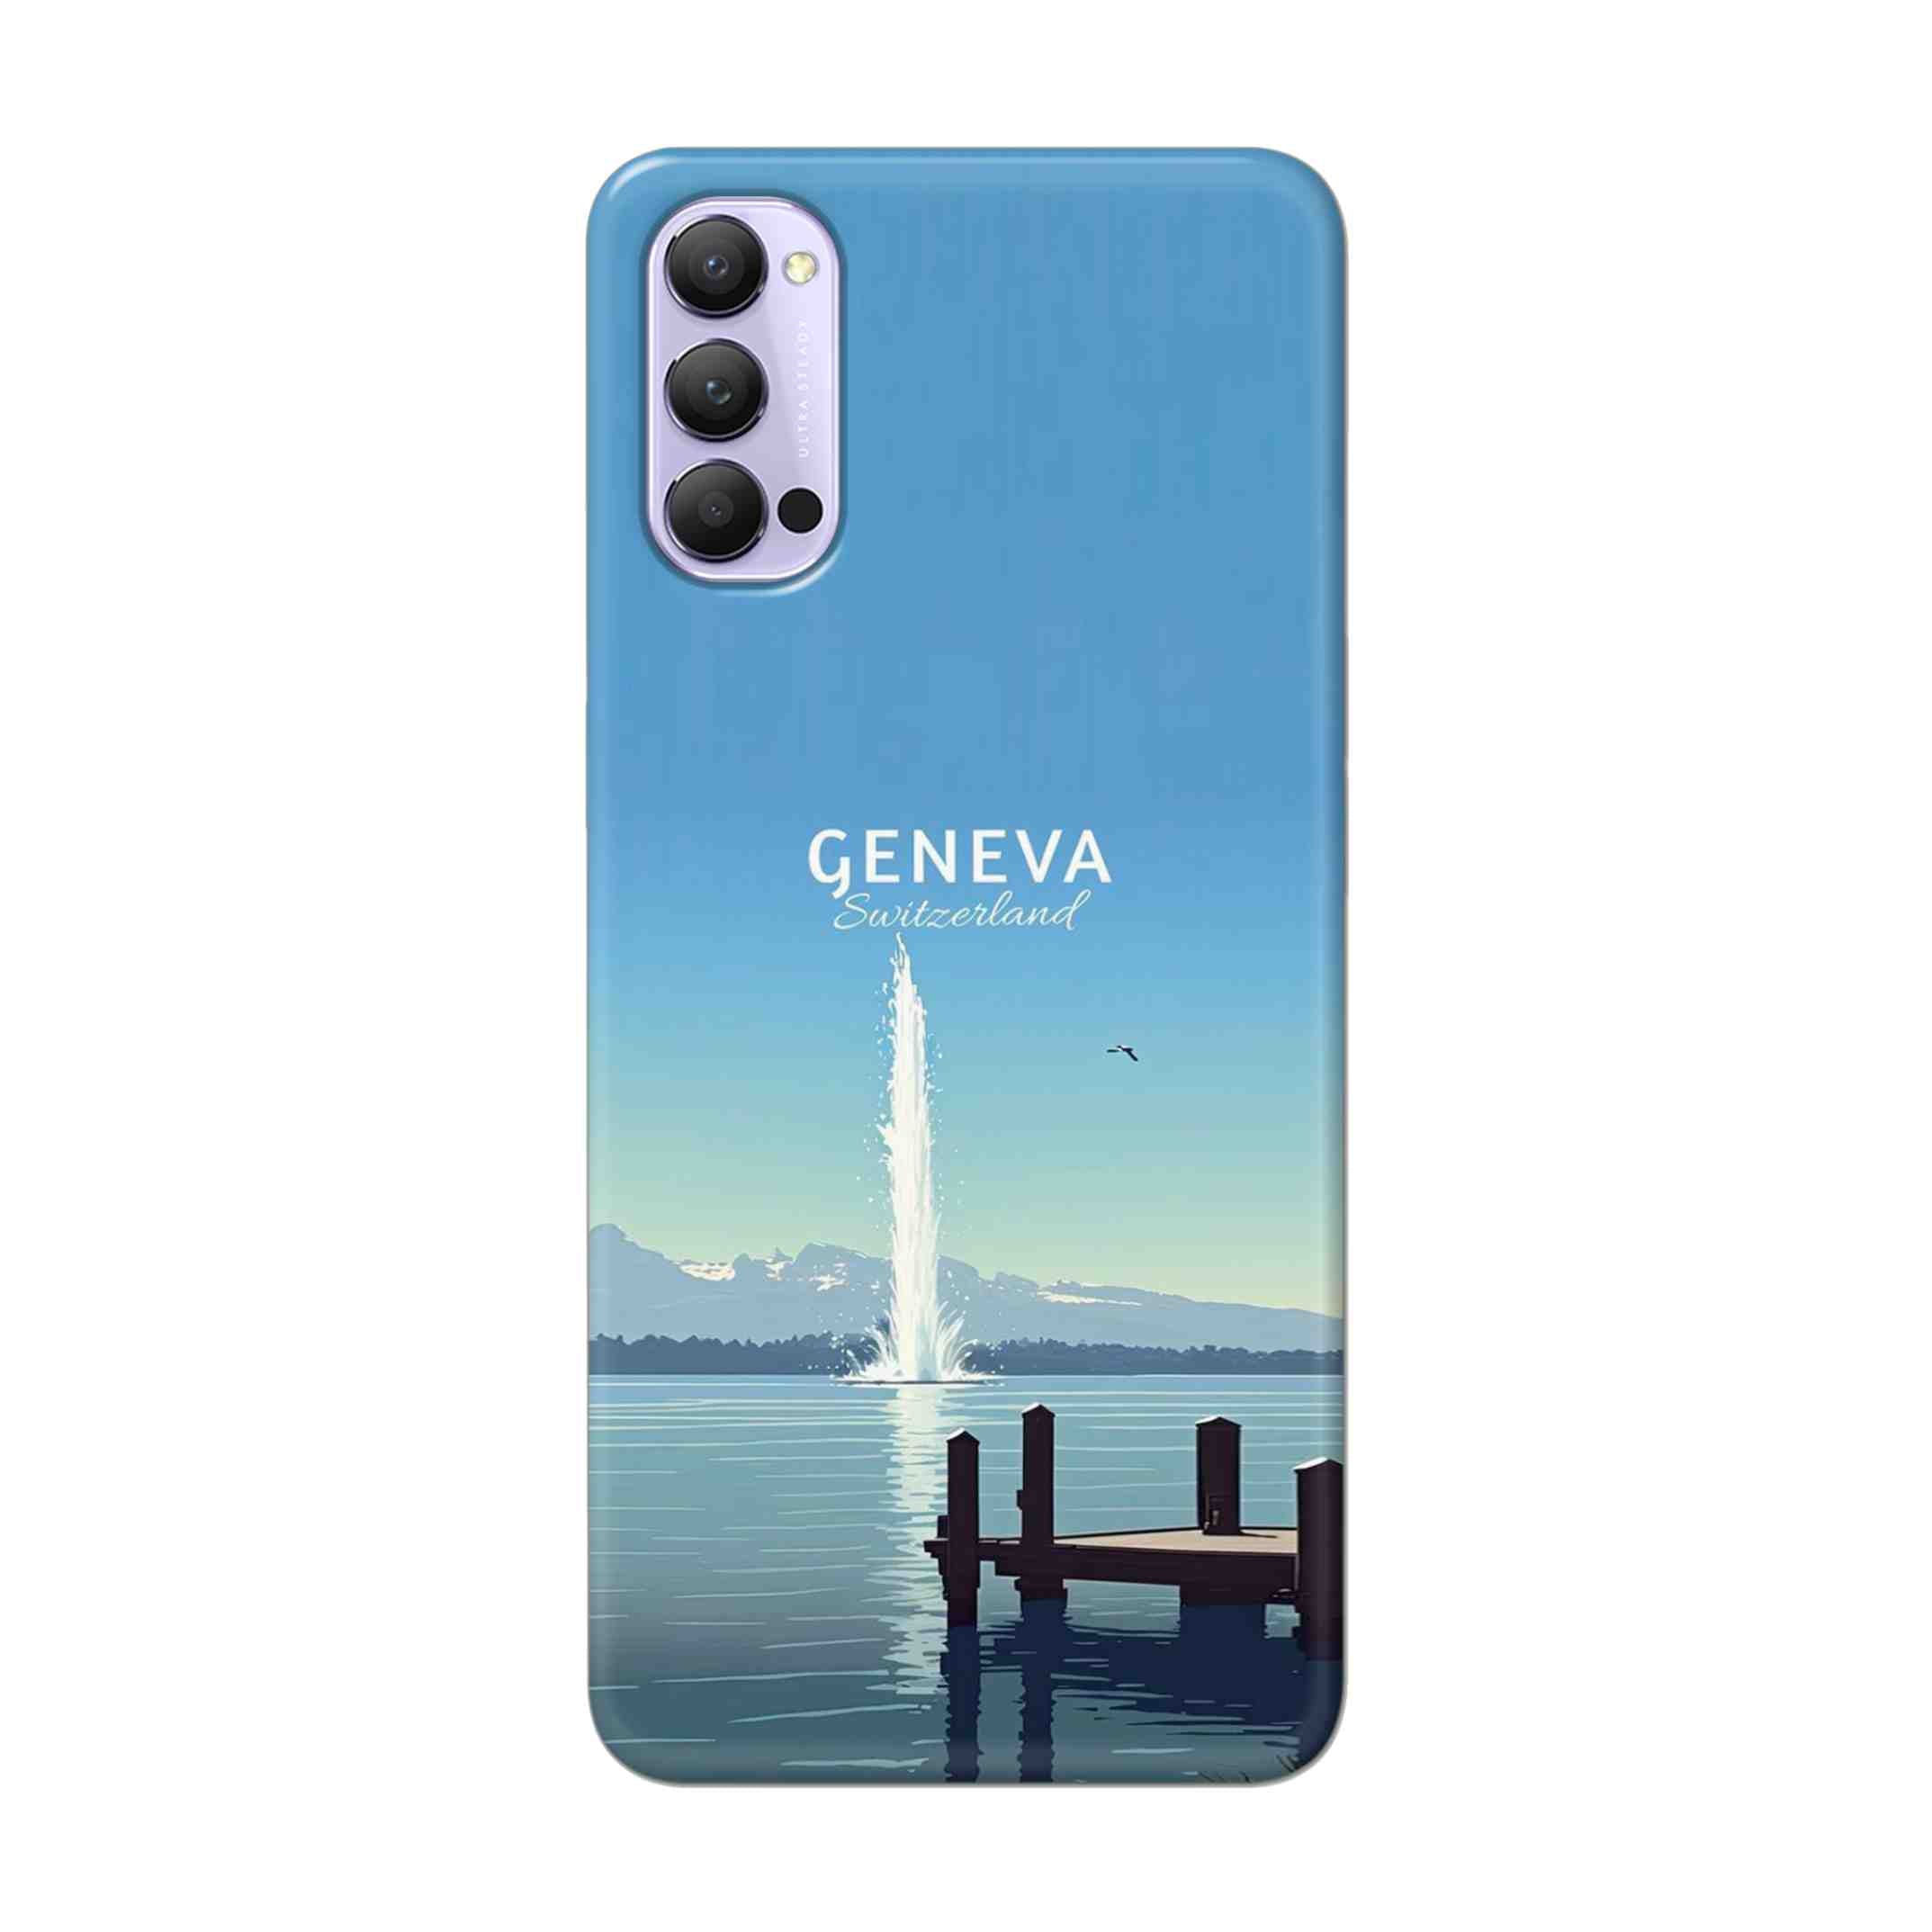 Buy Geneva Hard Back Mobile Phone Case Cover For Oppo Reno 4 Pro Online